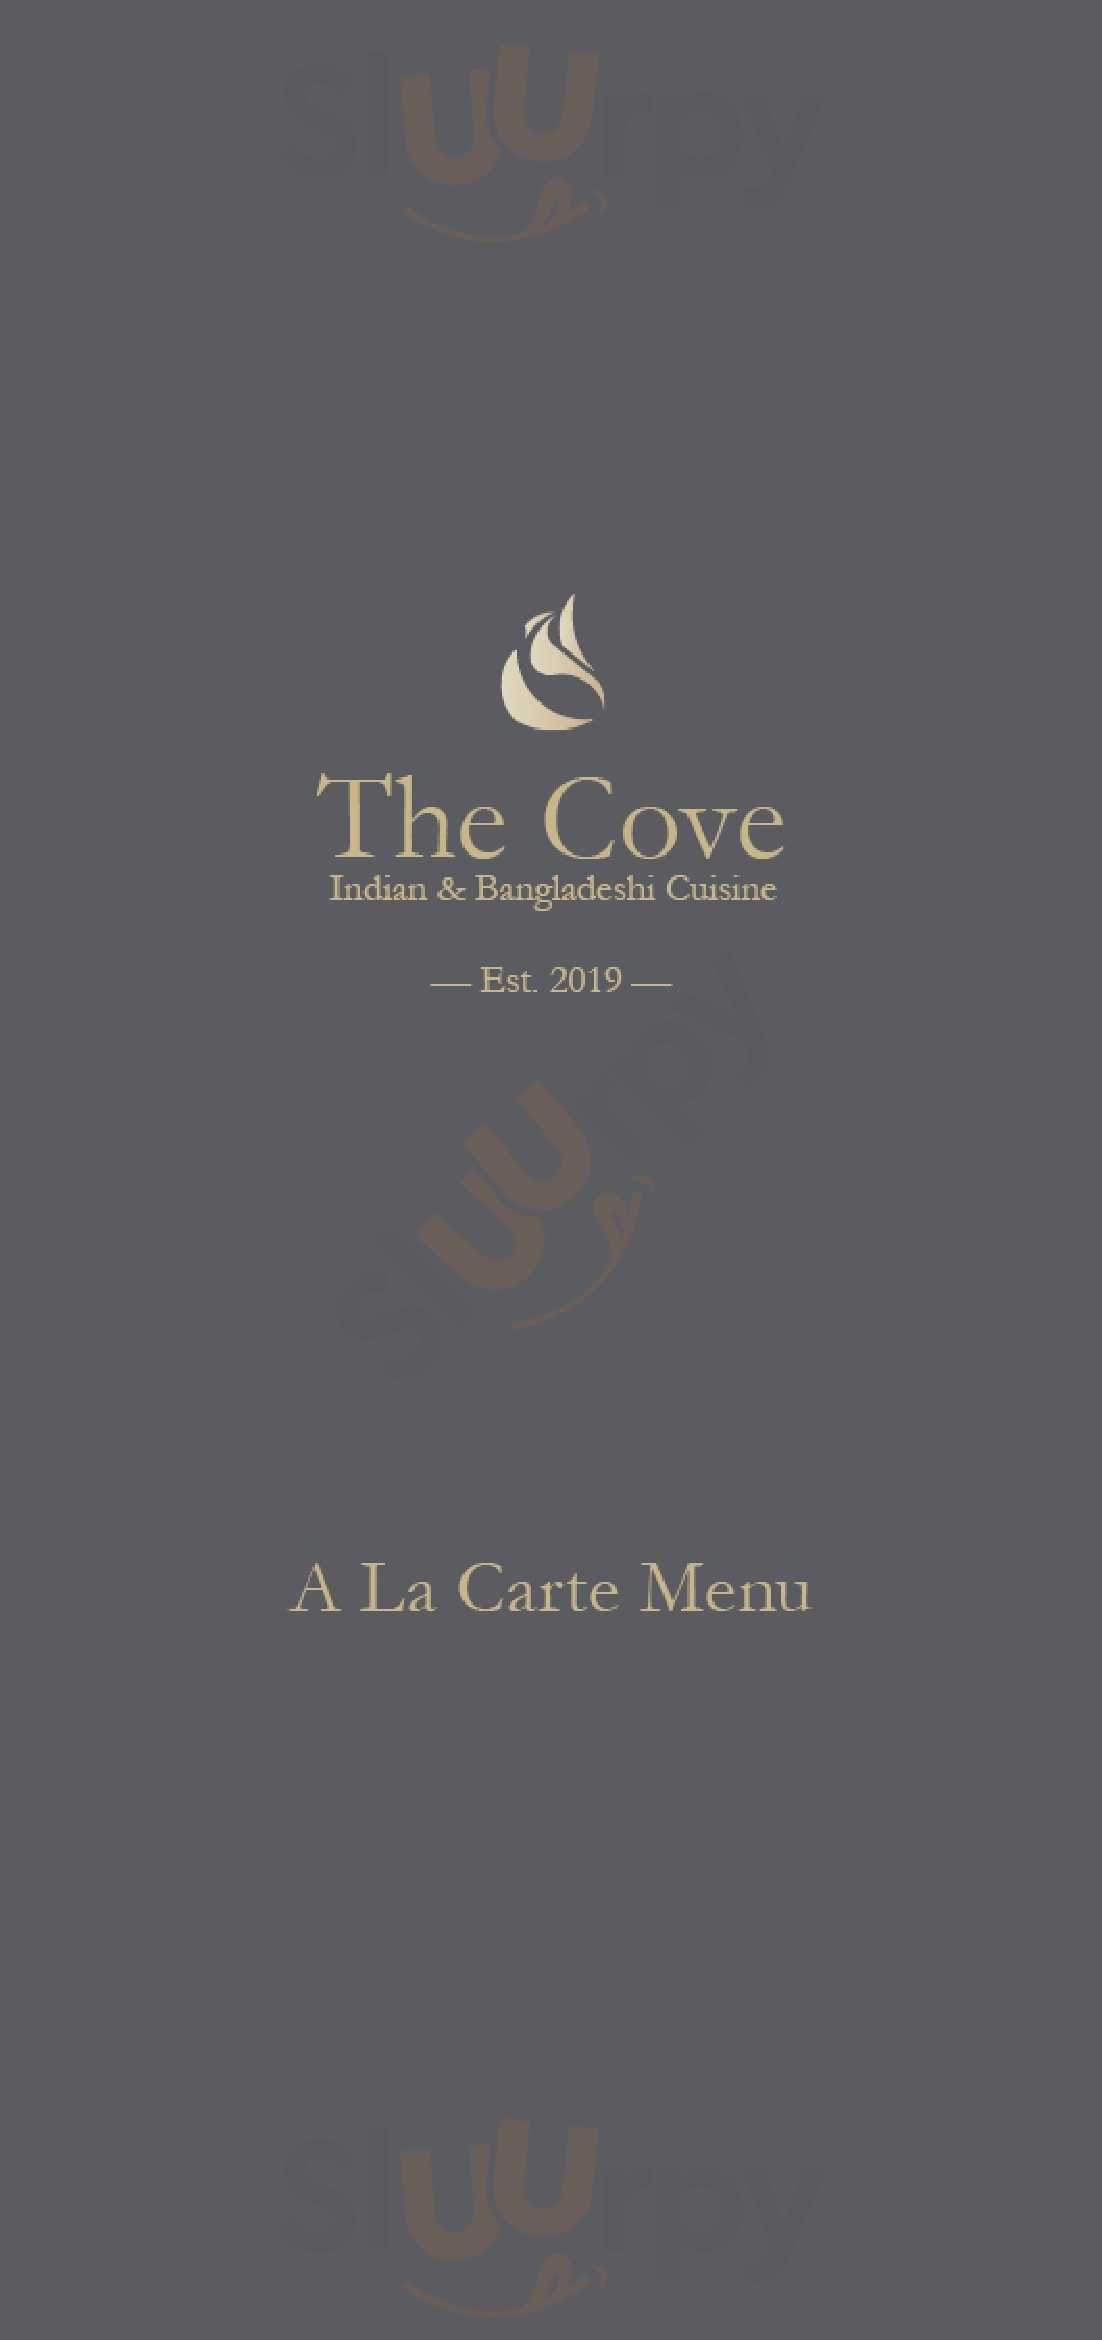 The Cove Edinburgh Menu - 1